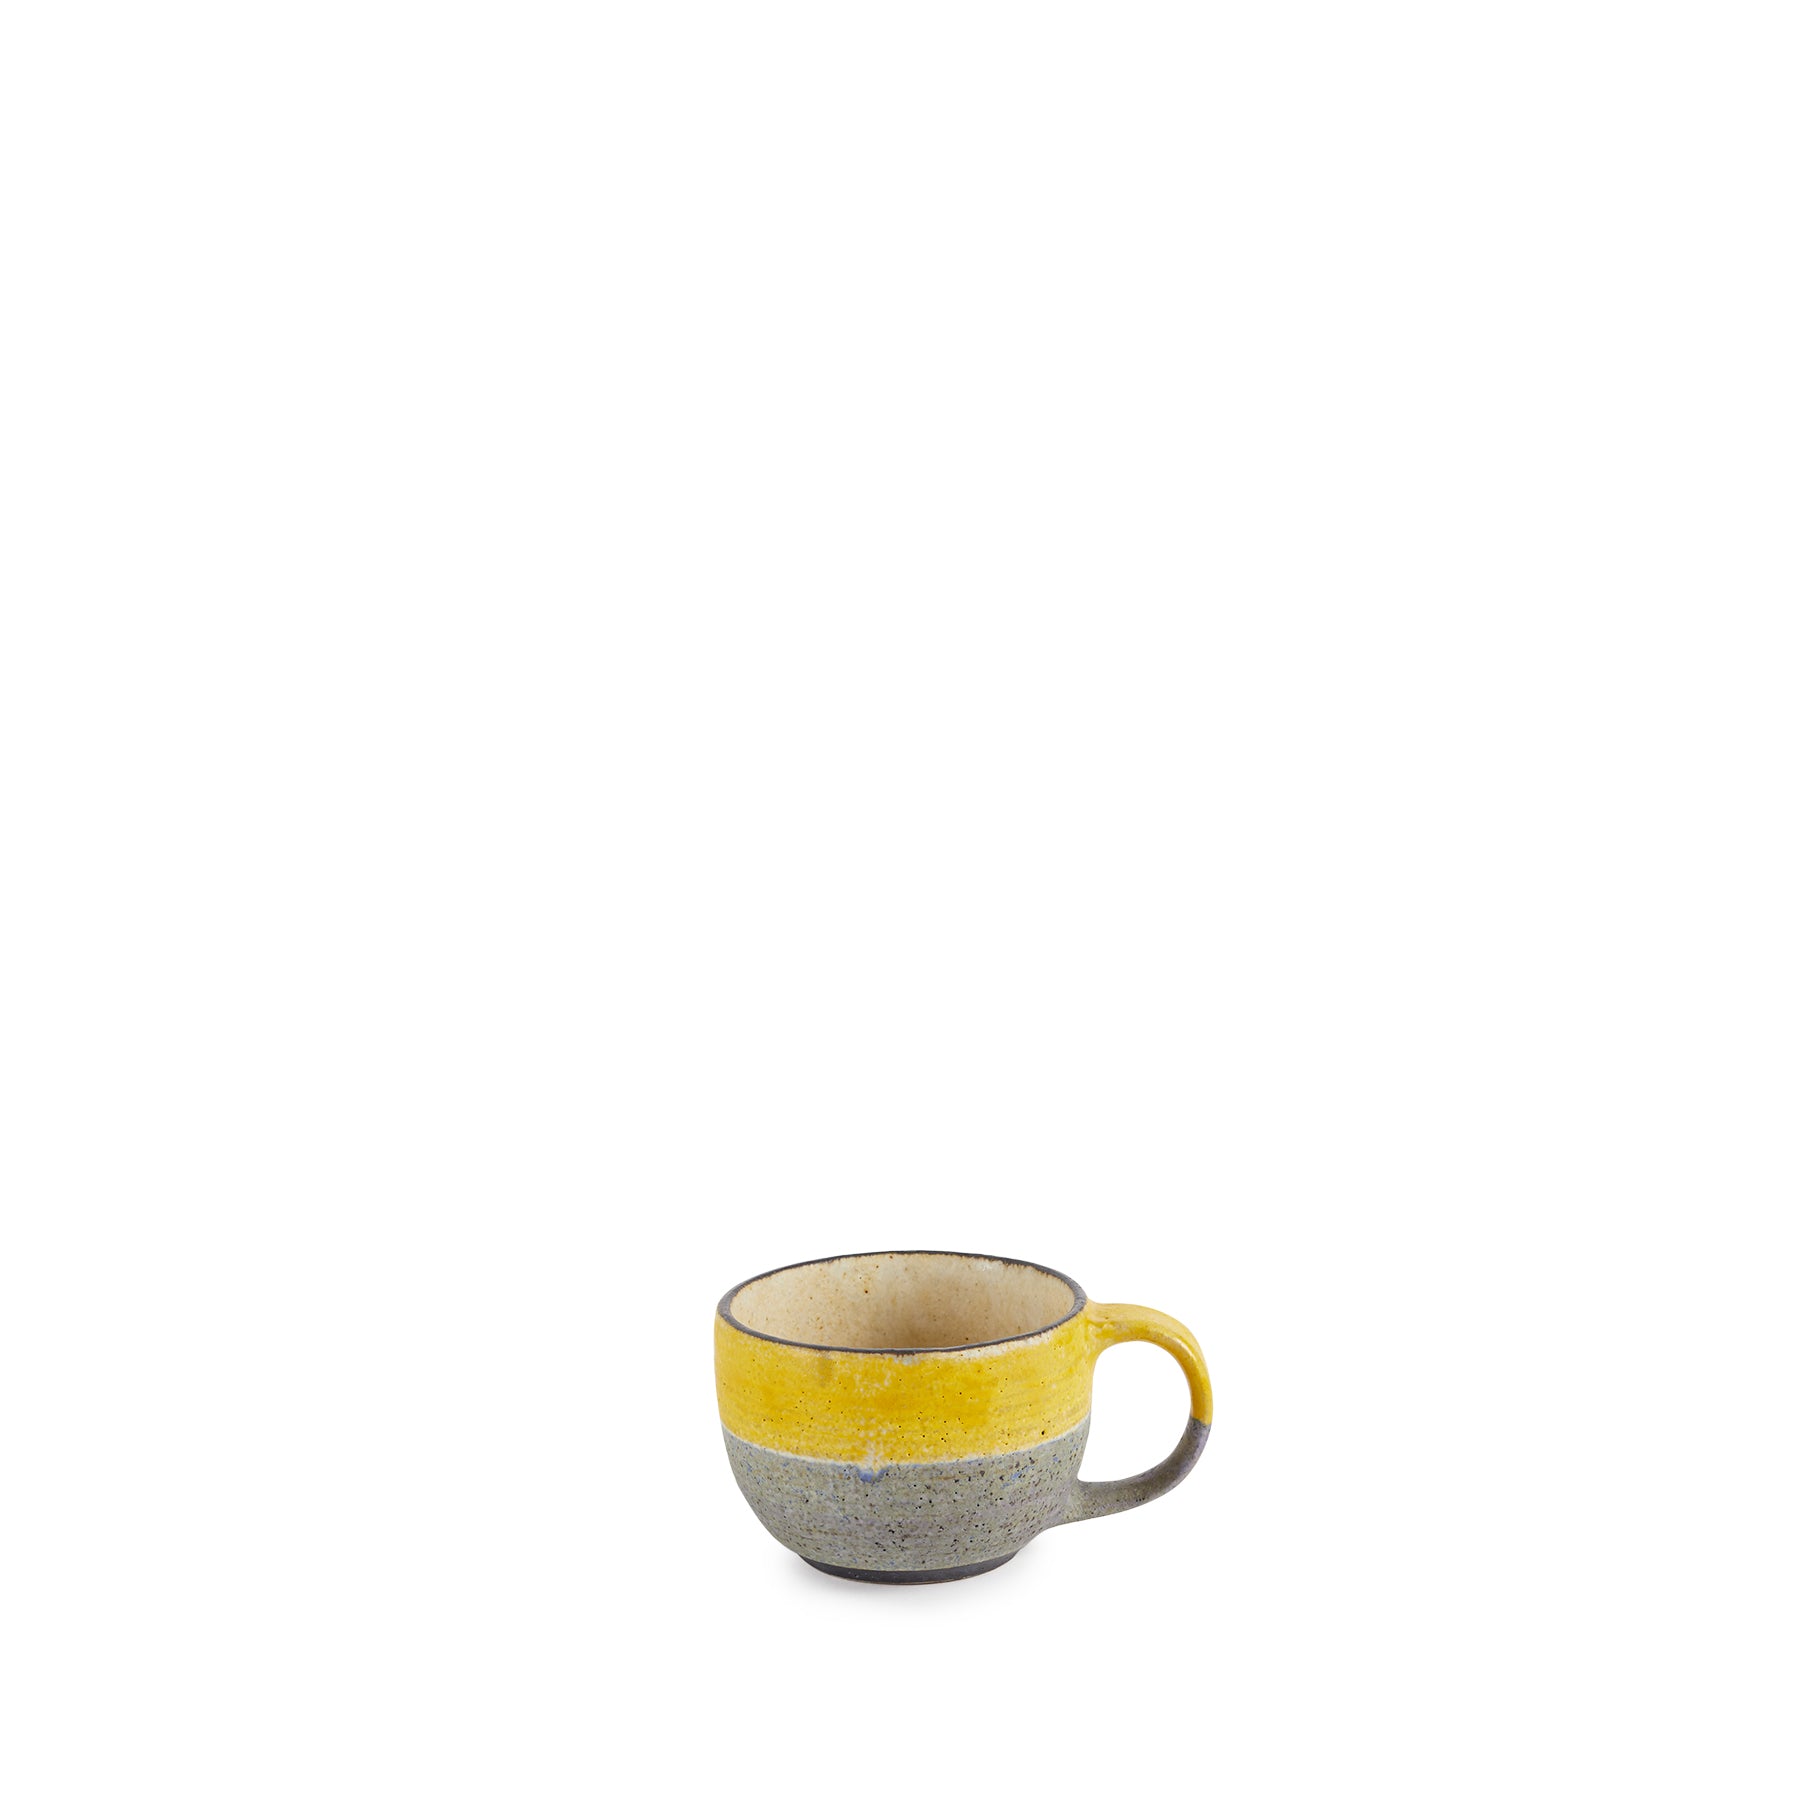 Indigo with Yellow Mug Zoom Image 1